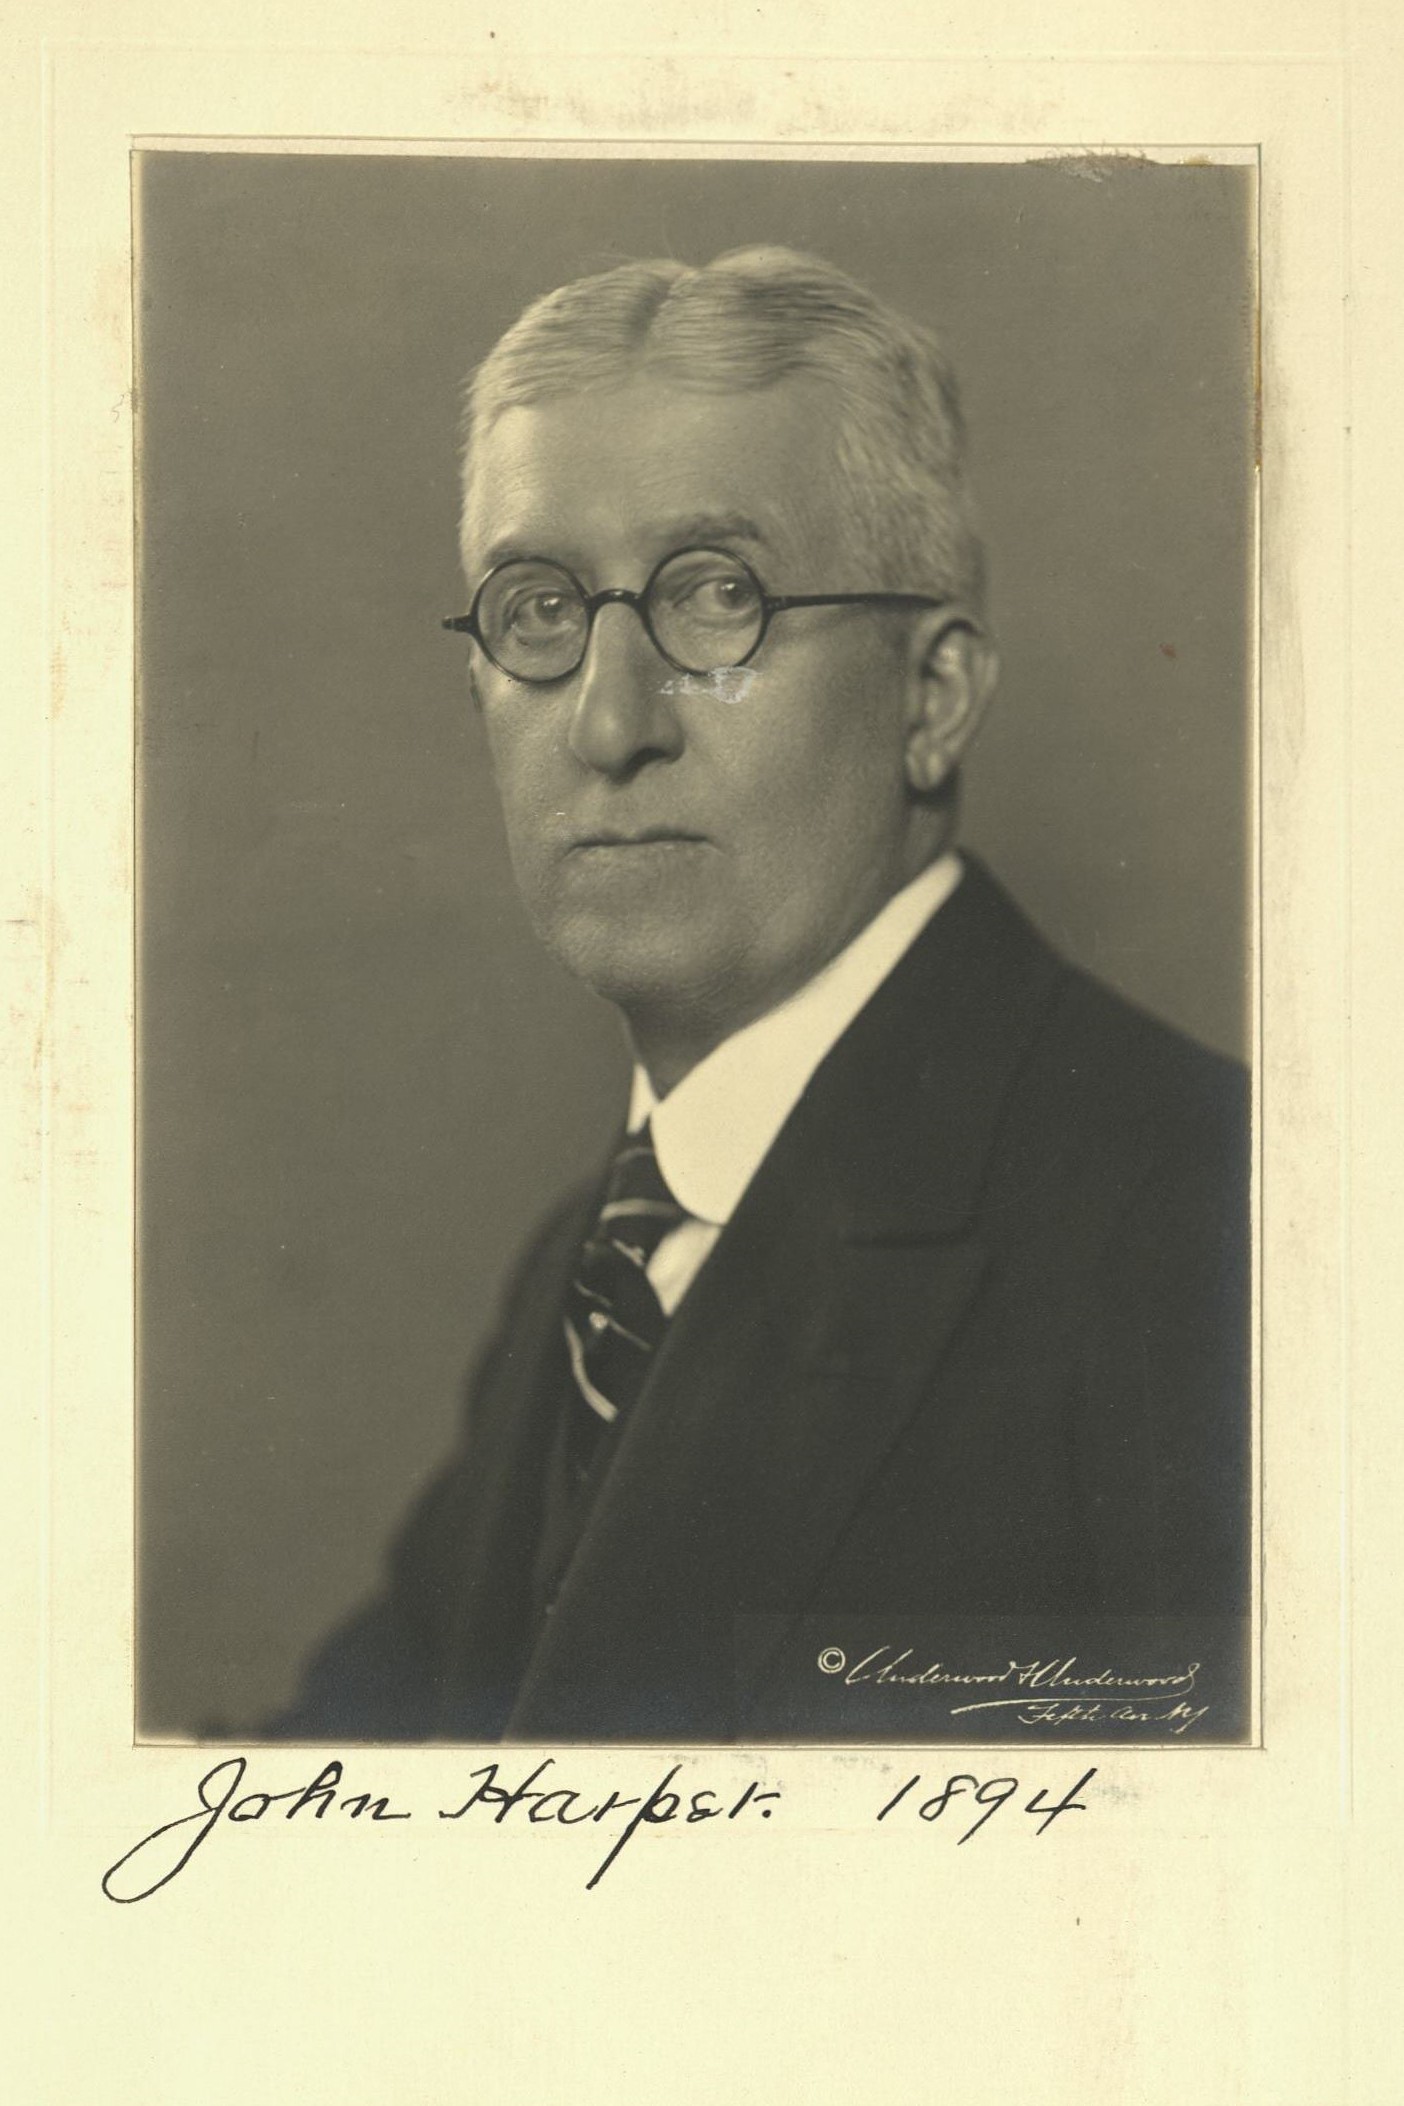 Member portrait of John Harper